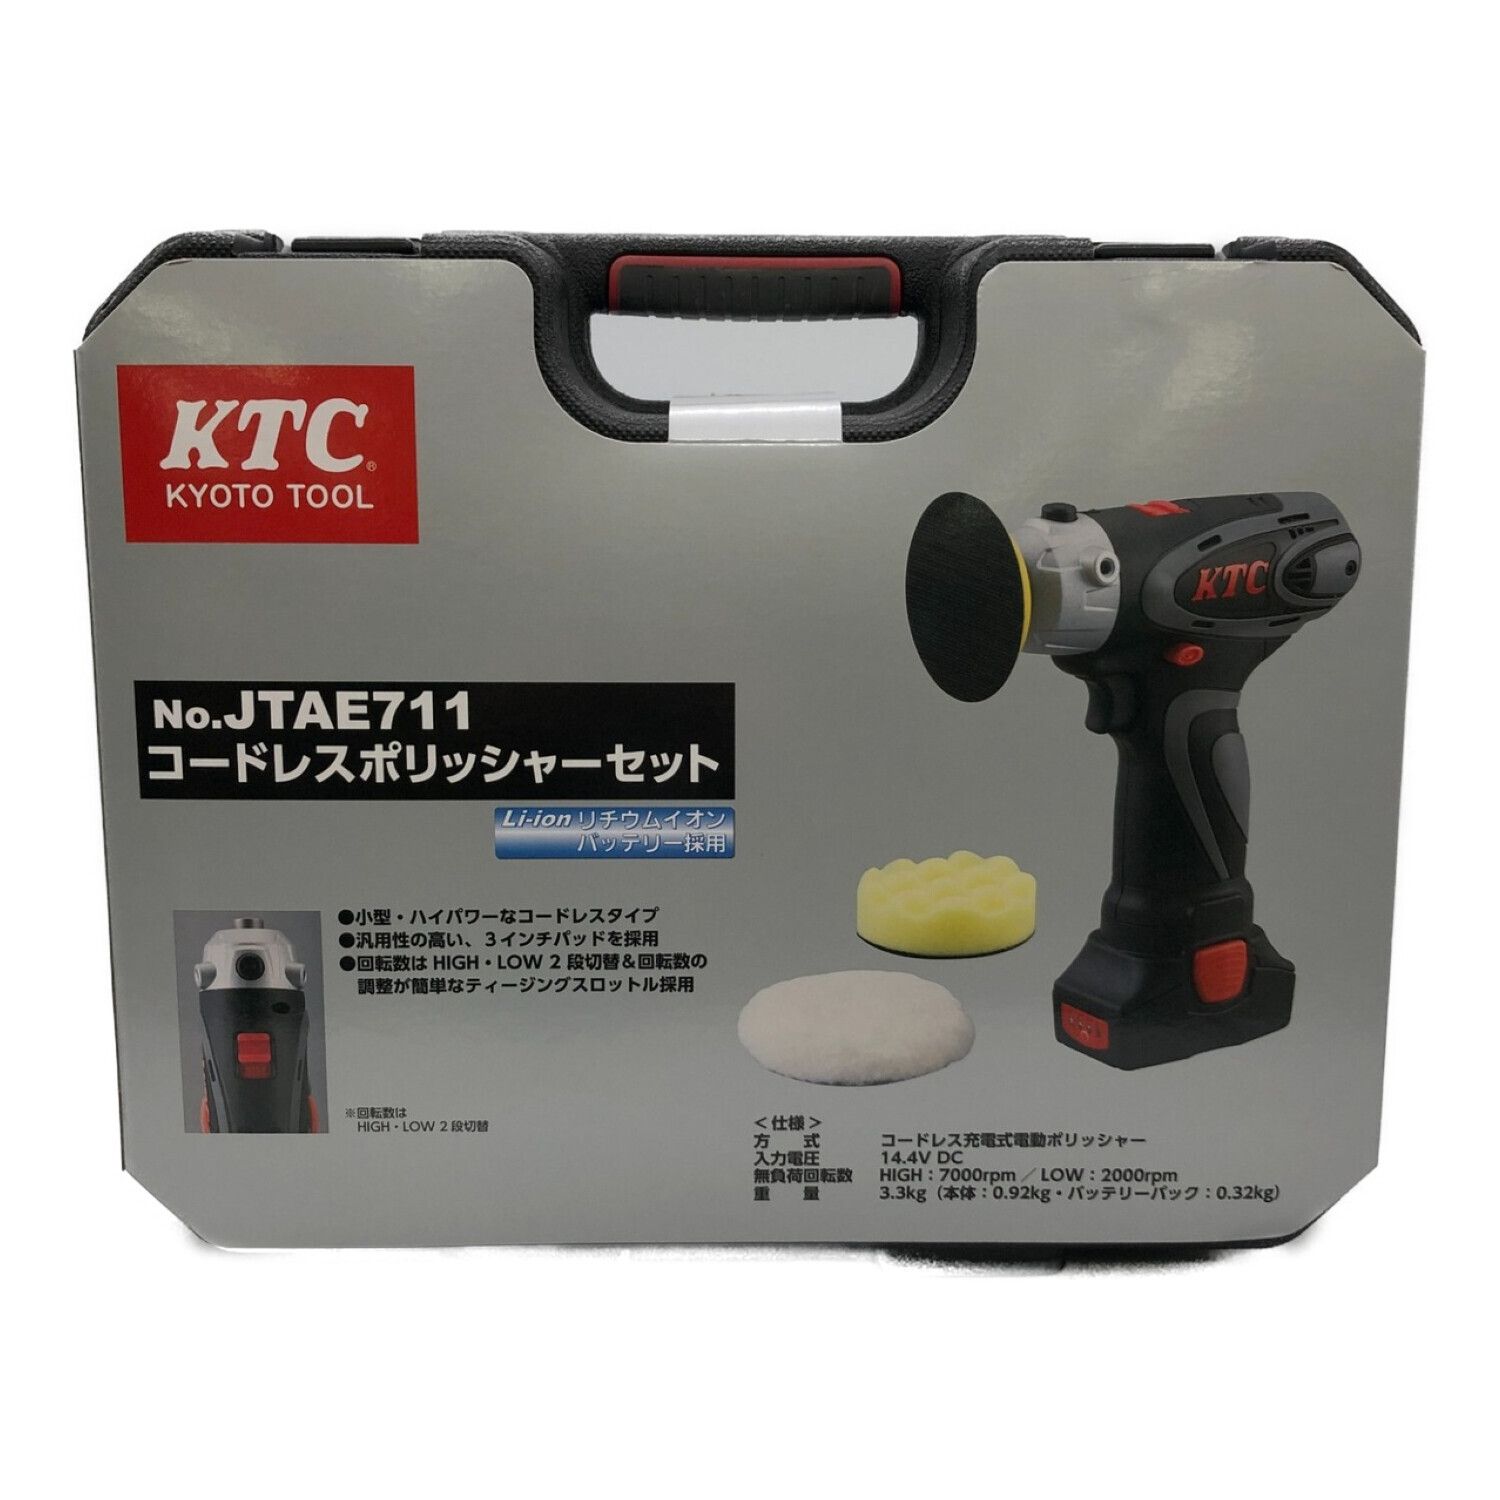 京都機械工具/KTCポリッシャーJTAE711 www.krzysztofbialy.com